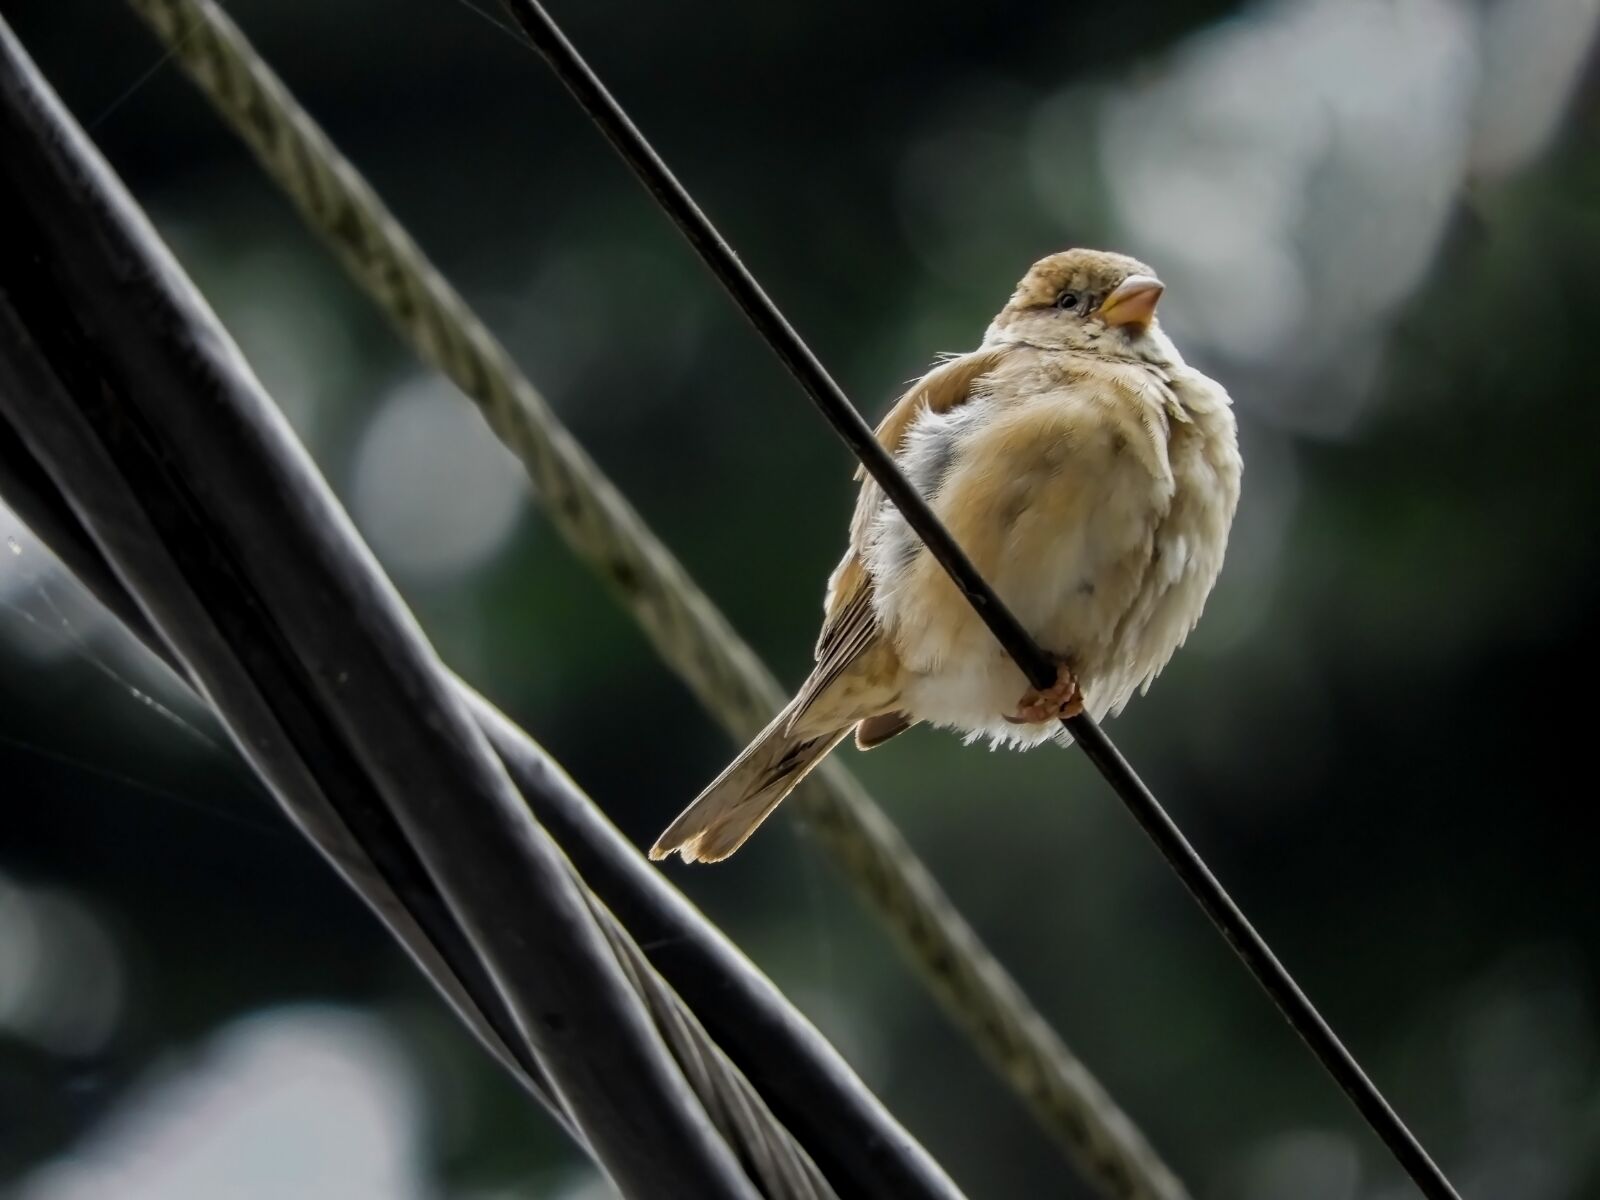 Nikon Coolpix B700 sample photo. Bird, animal, sparrow photography